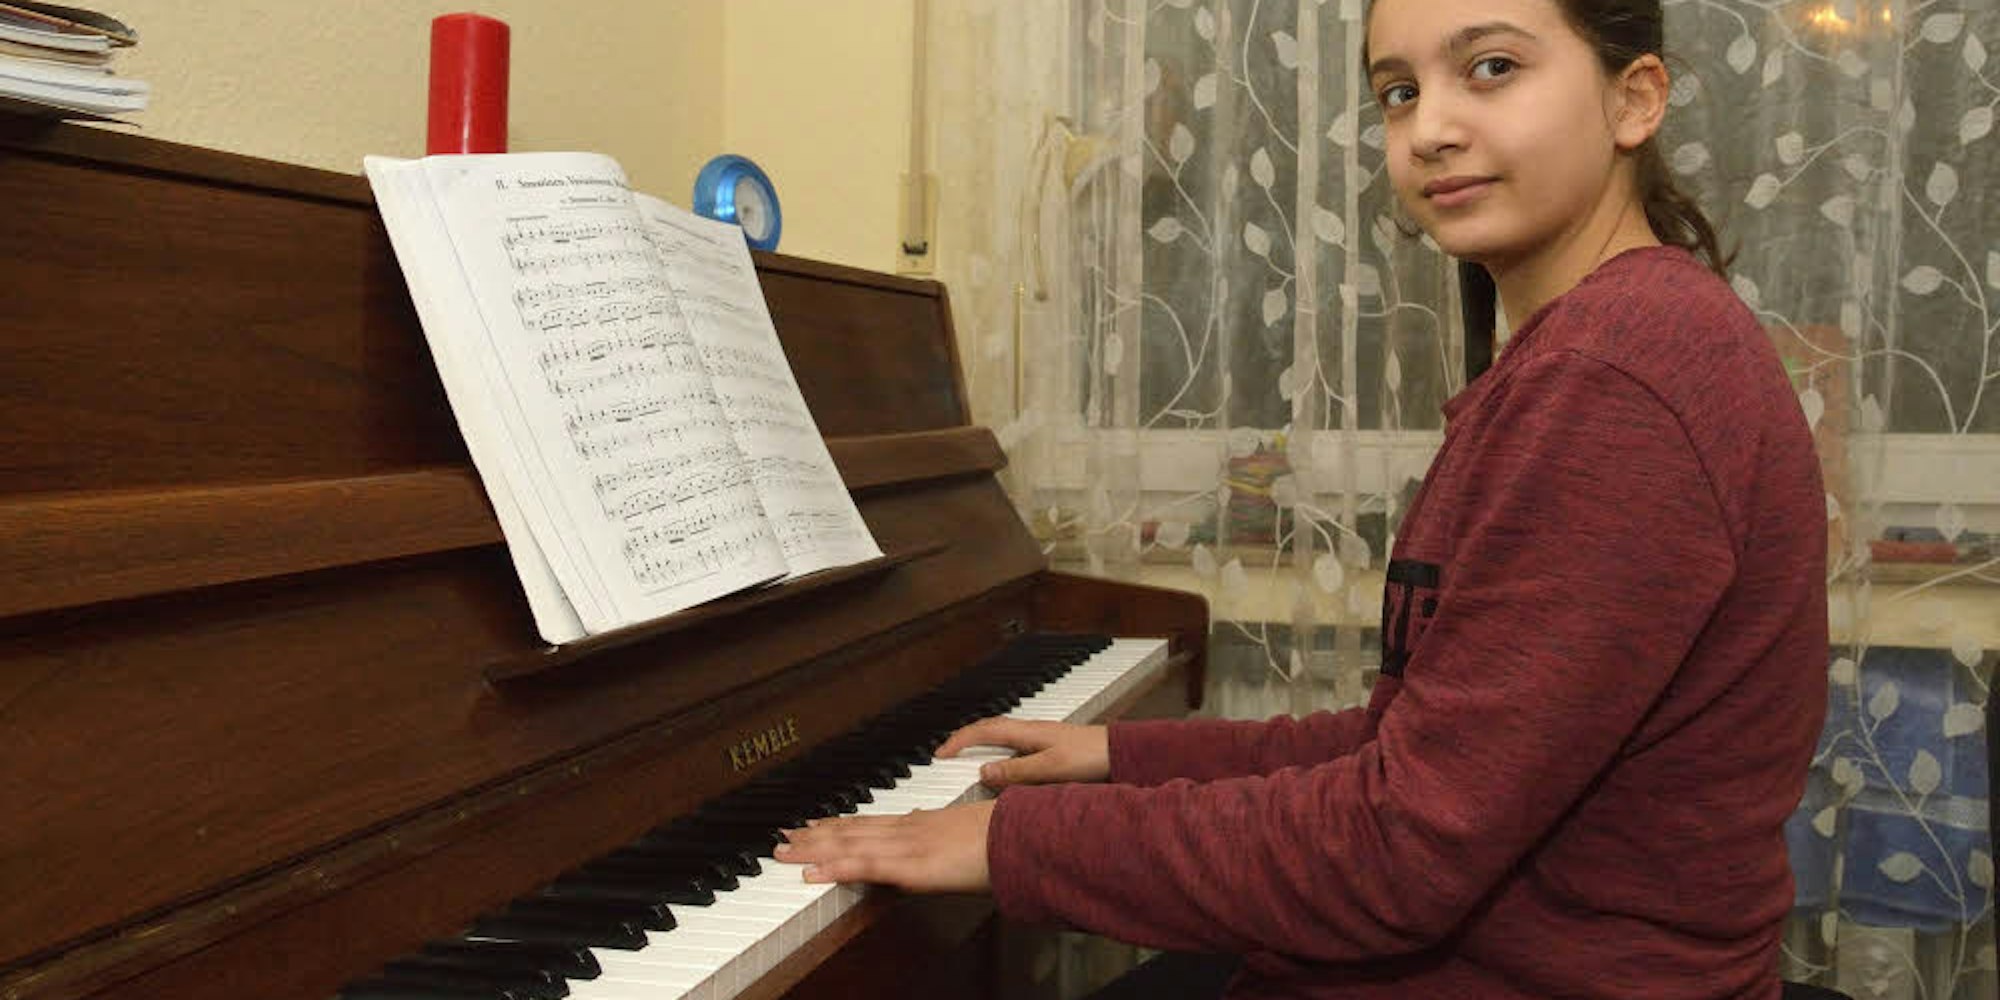 Minyar Kanna liebt das Klavierspielen. Am Sonntag tritt sie beim Abschlusskonzert von „Jugend musiziert“ in der Waldorfschule auf.